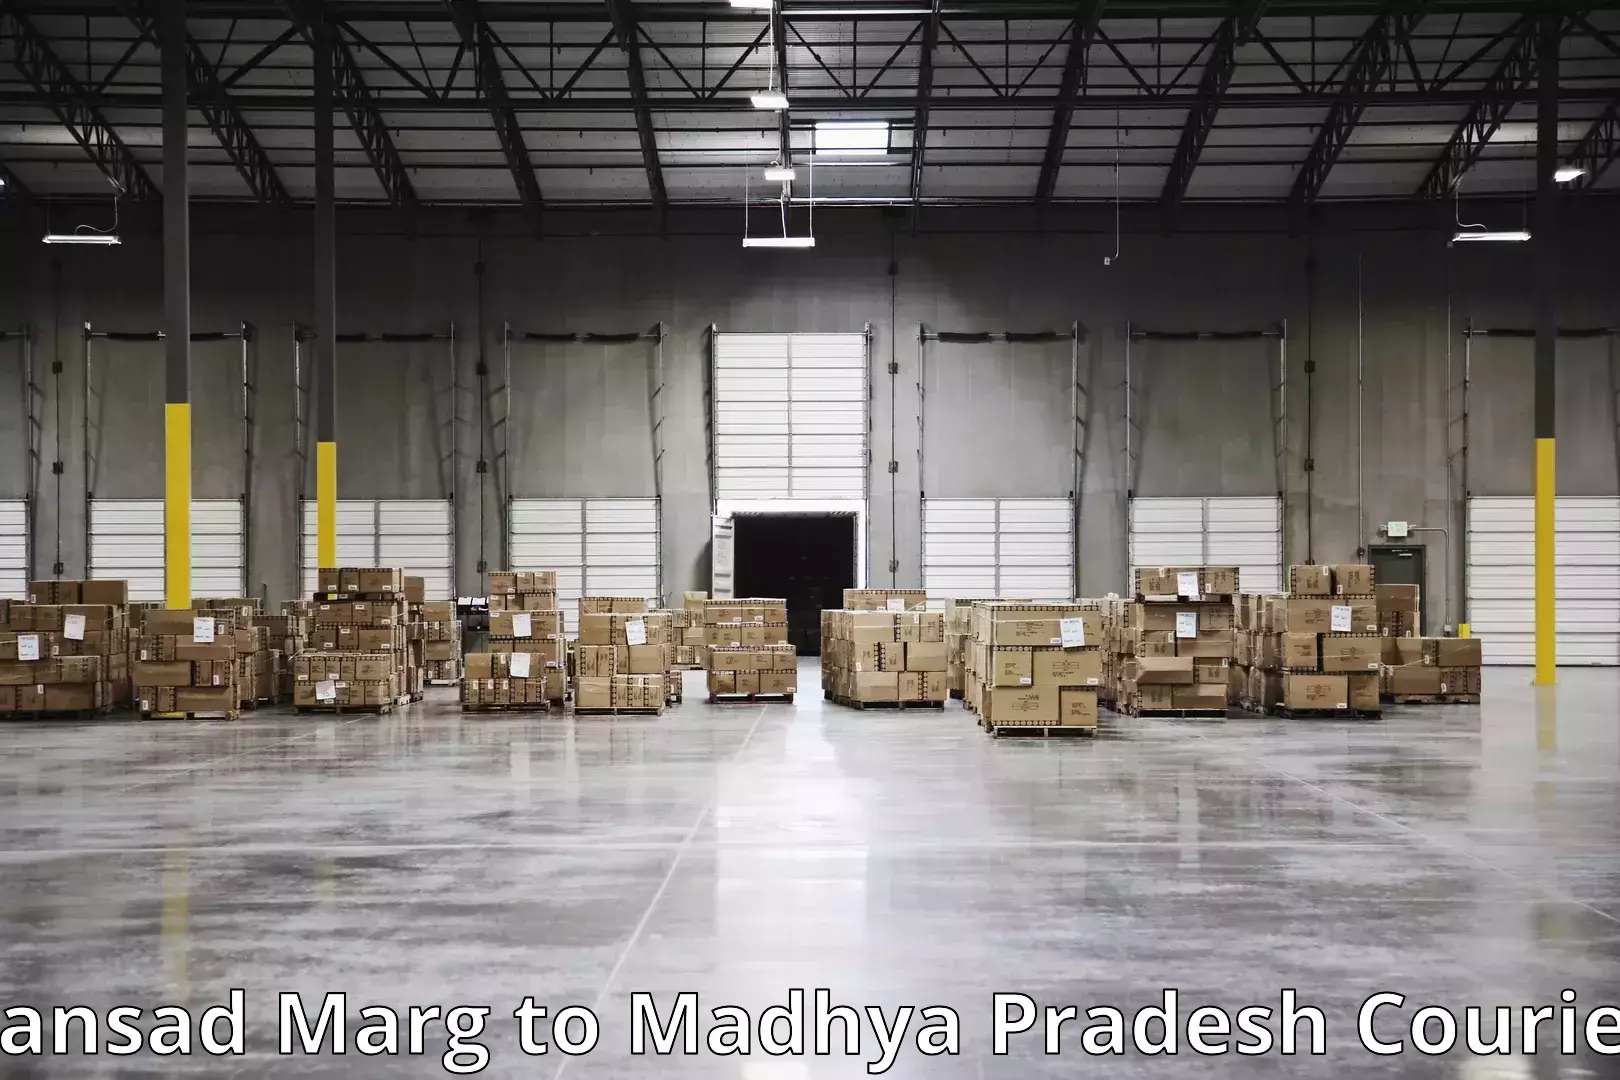 Furniture delivery service Sansad Marg to Raipur Karchuliyan